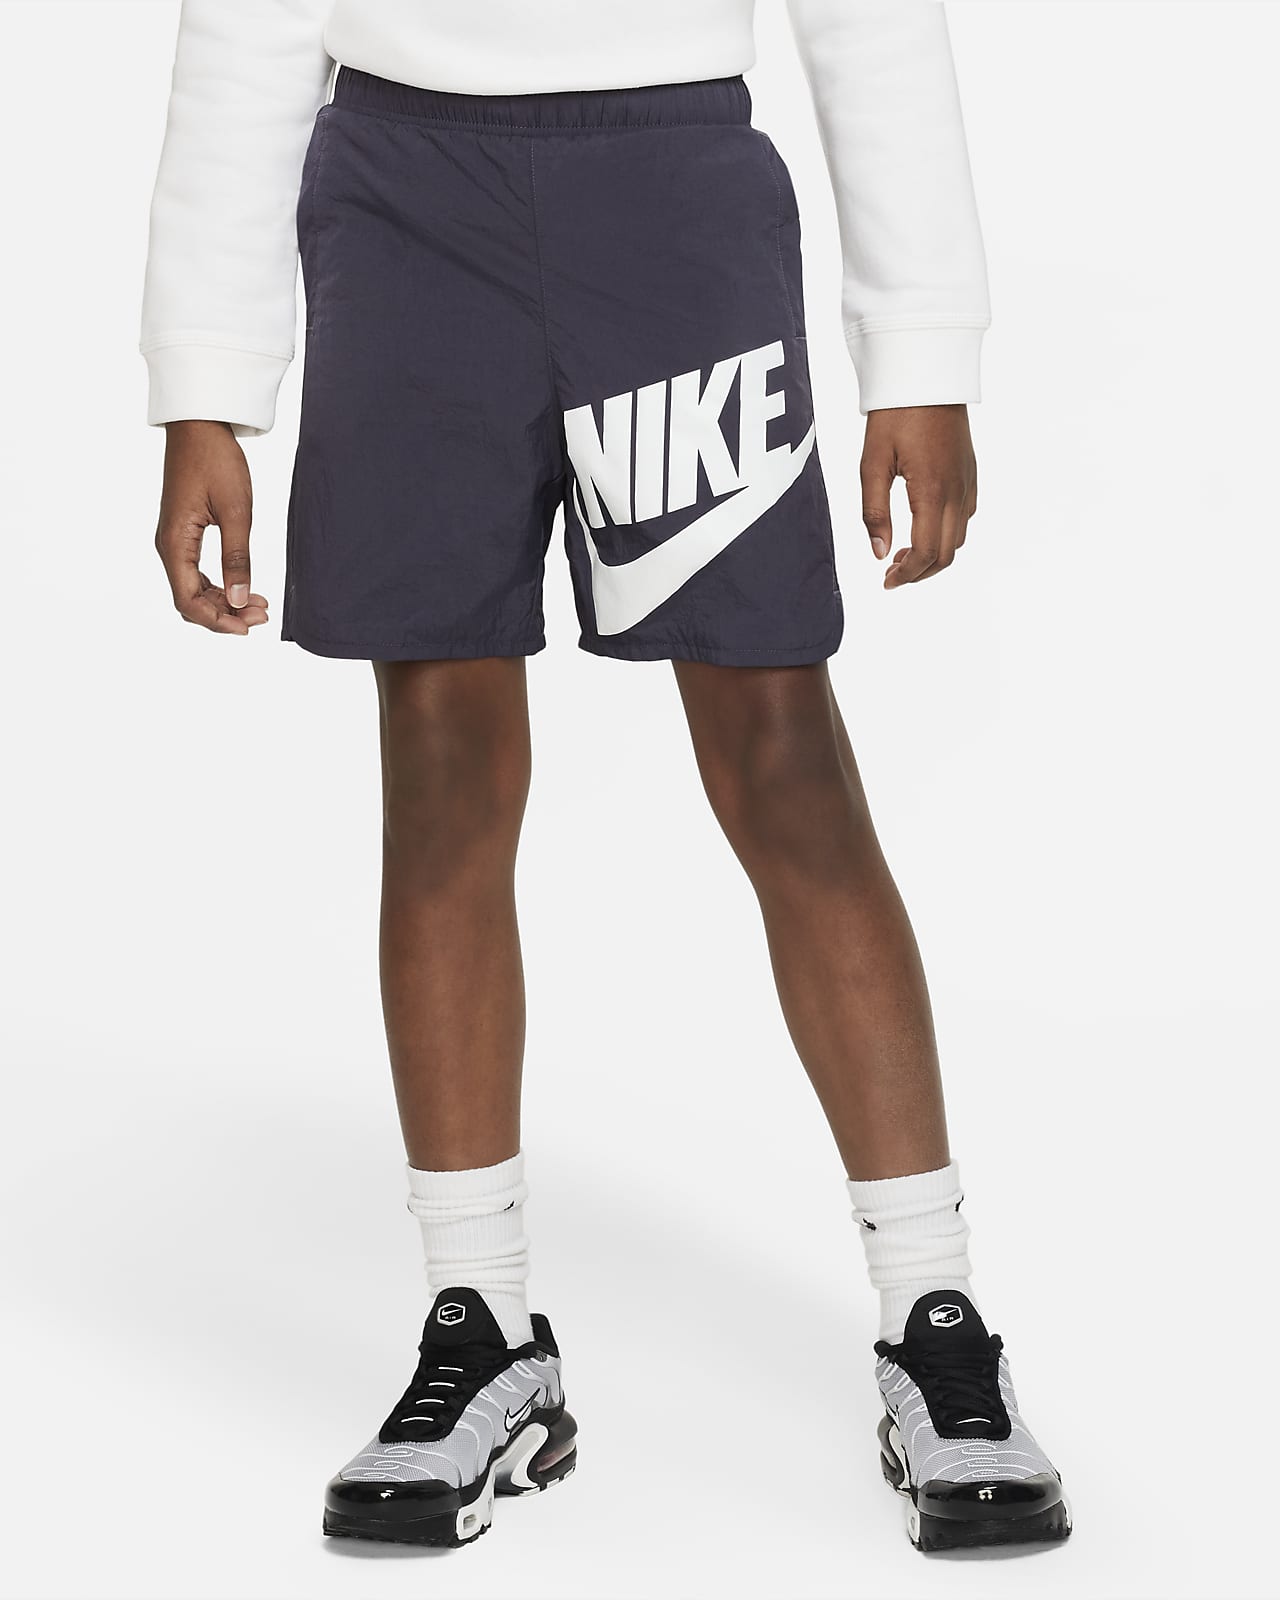 Nike Older Kids' (Boys') Shorts. Nike LU